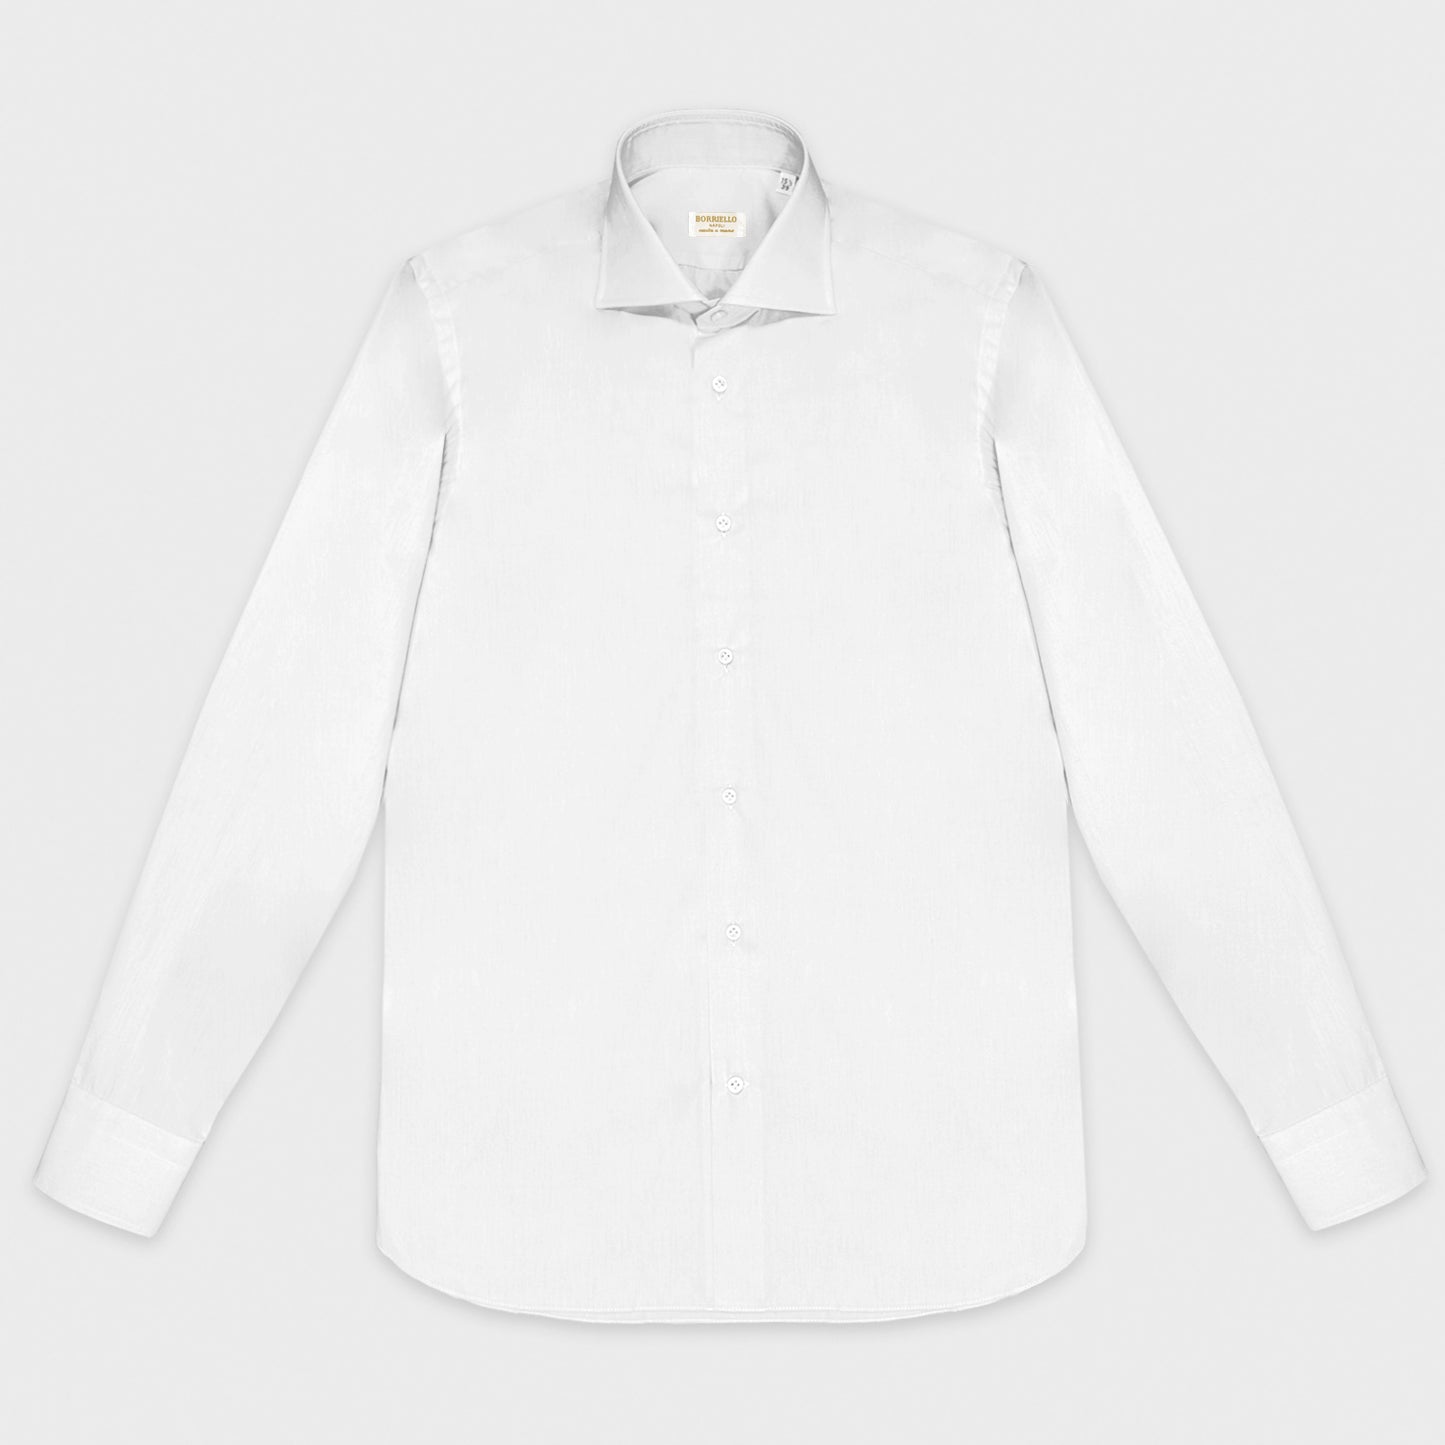 White Oxford Cotton Shirt Borriello Napoli.